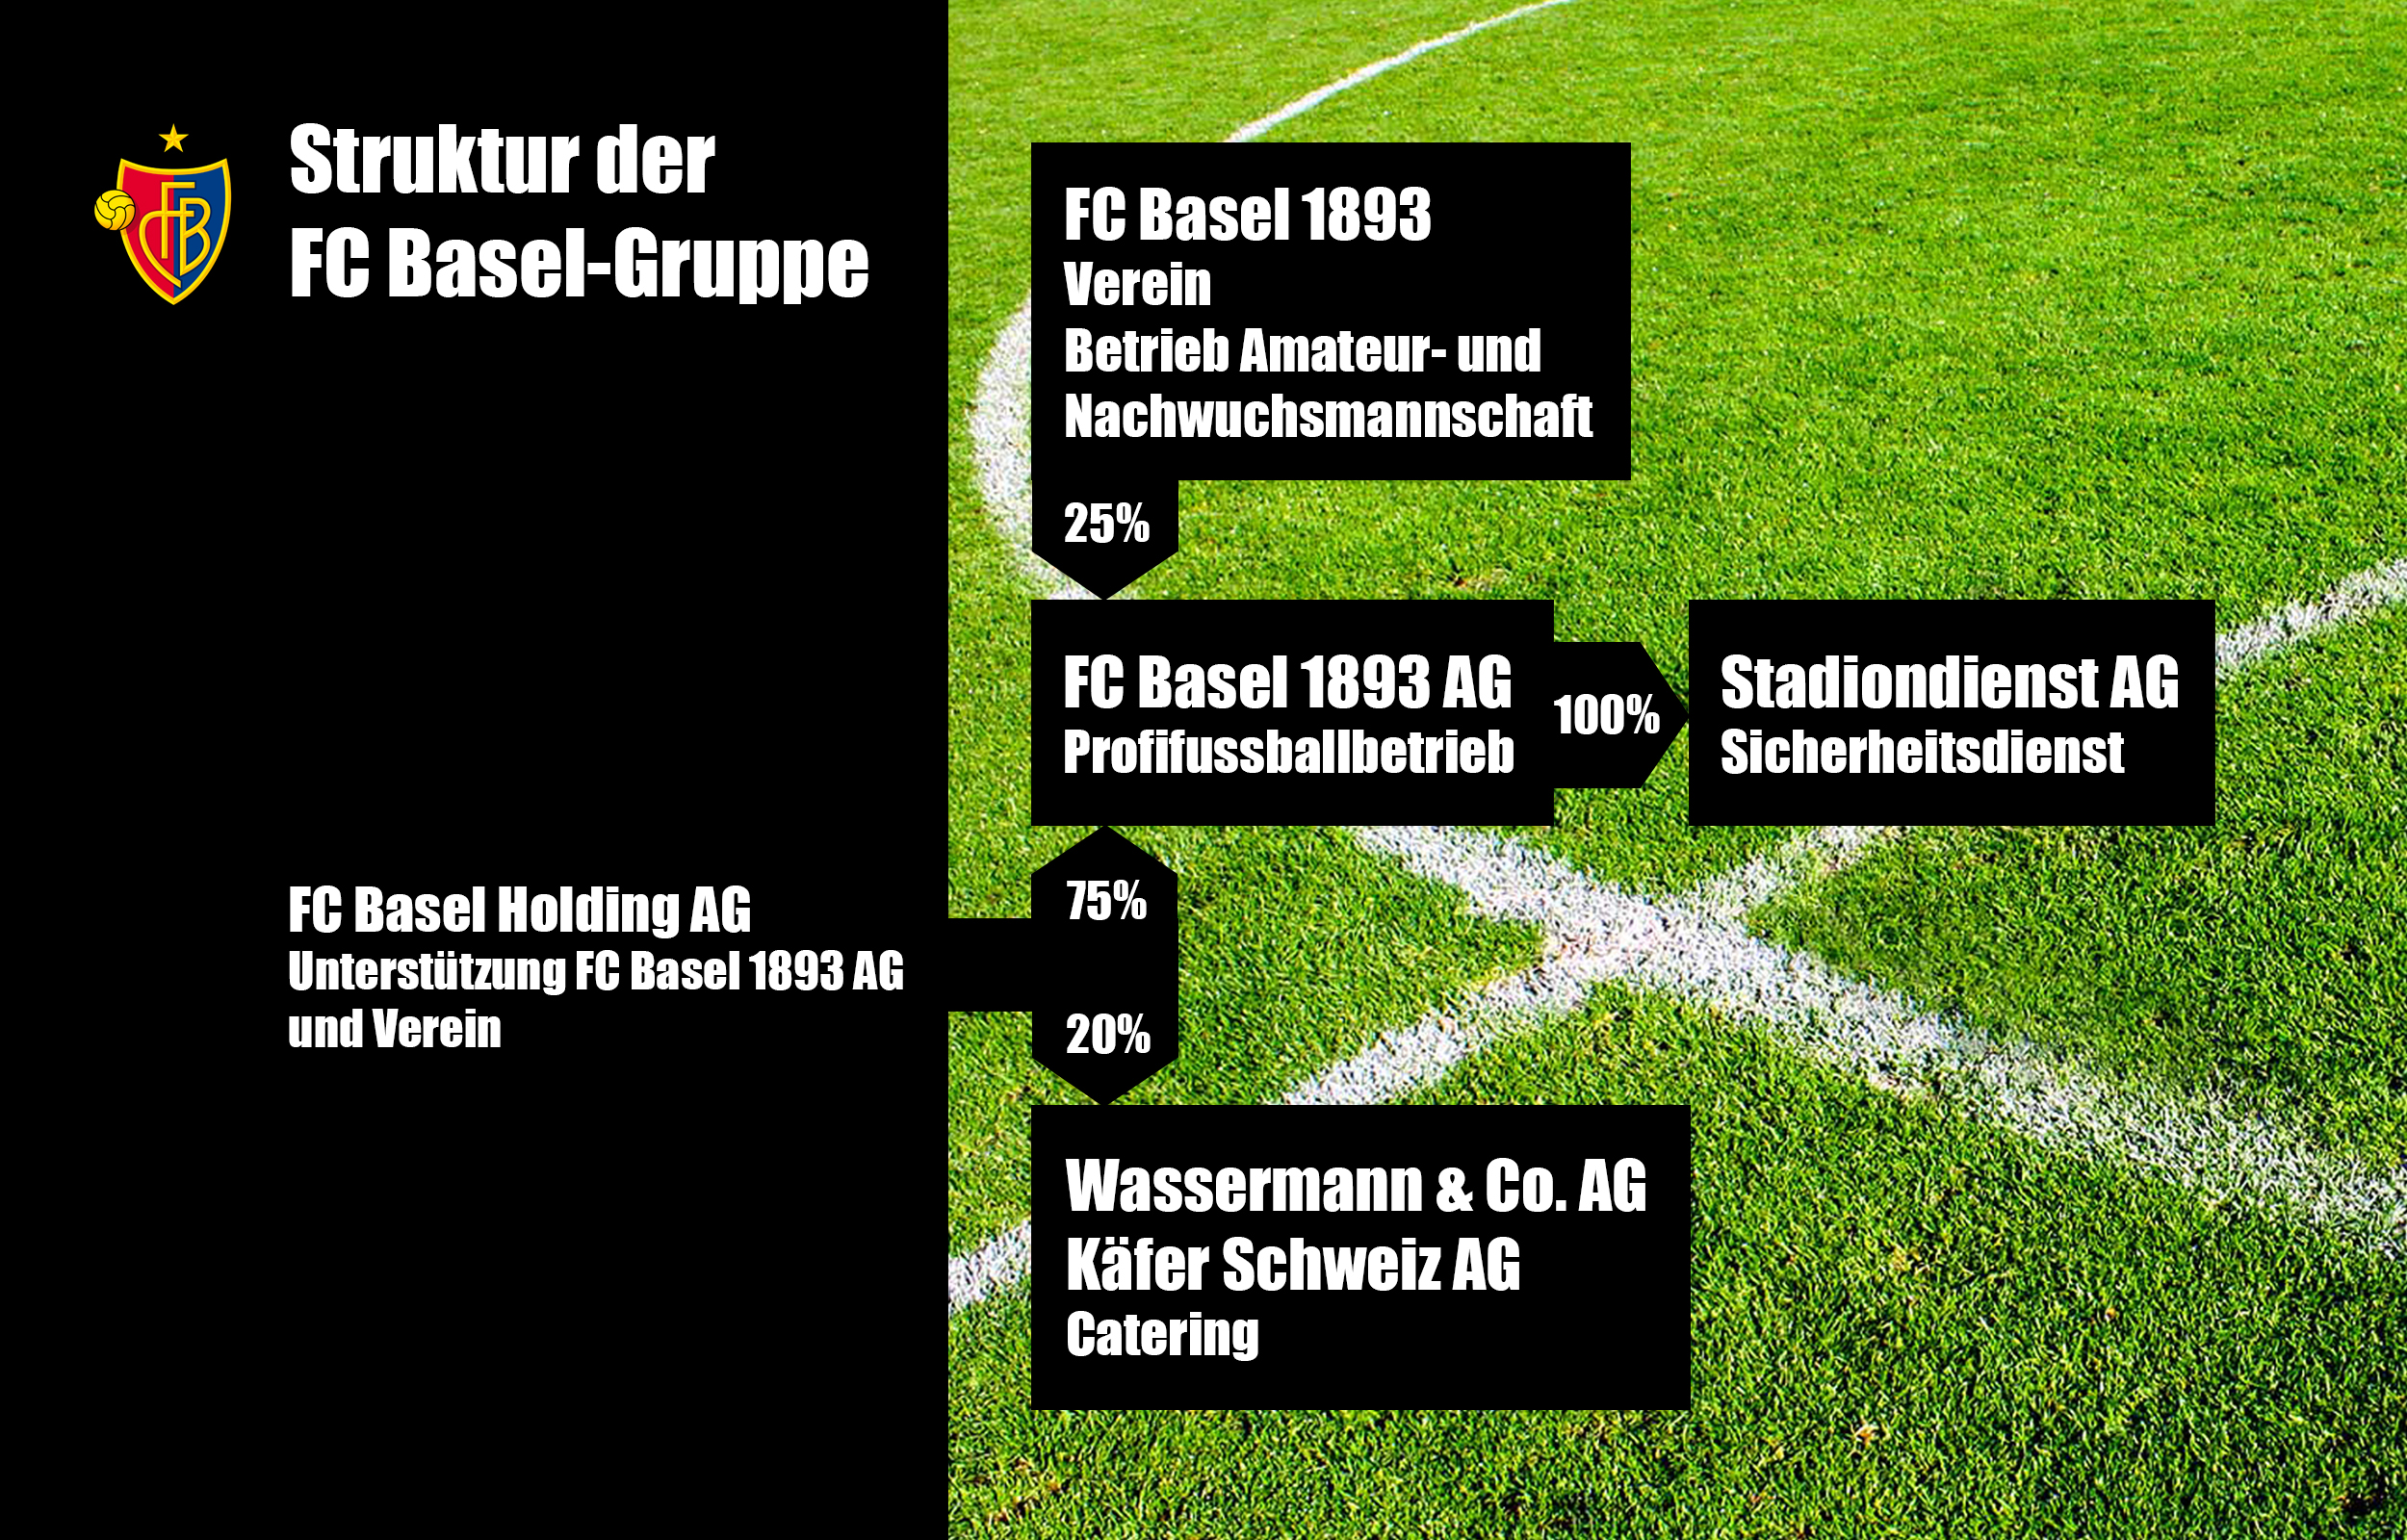 Die FC Basel-Gruppe und die Beteiligungen, Stand: März 2017.